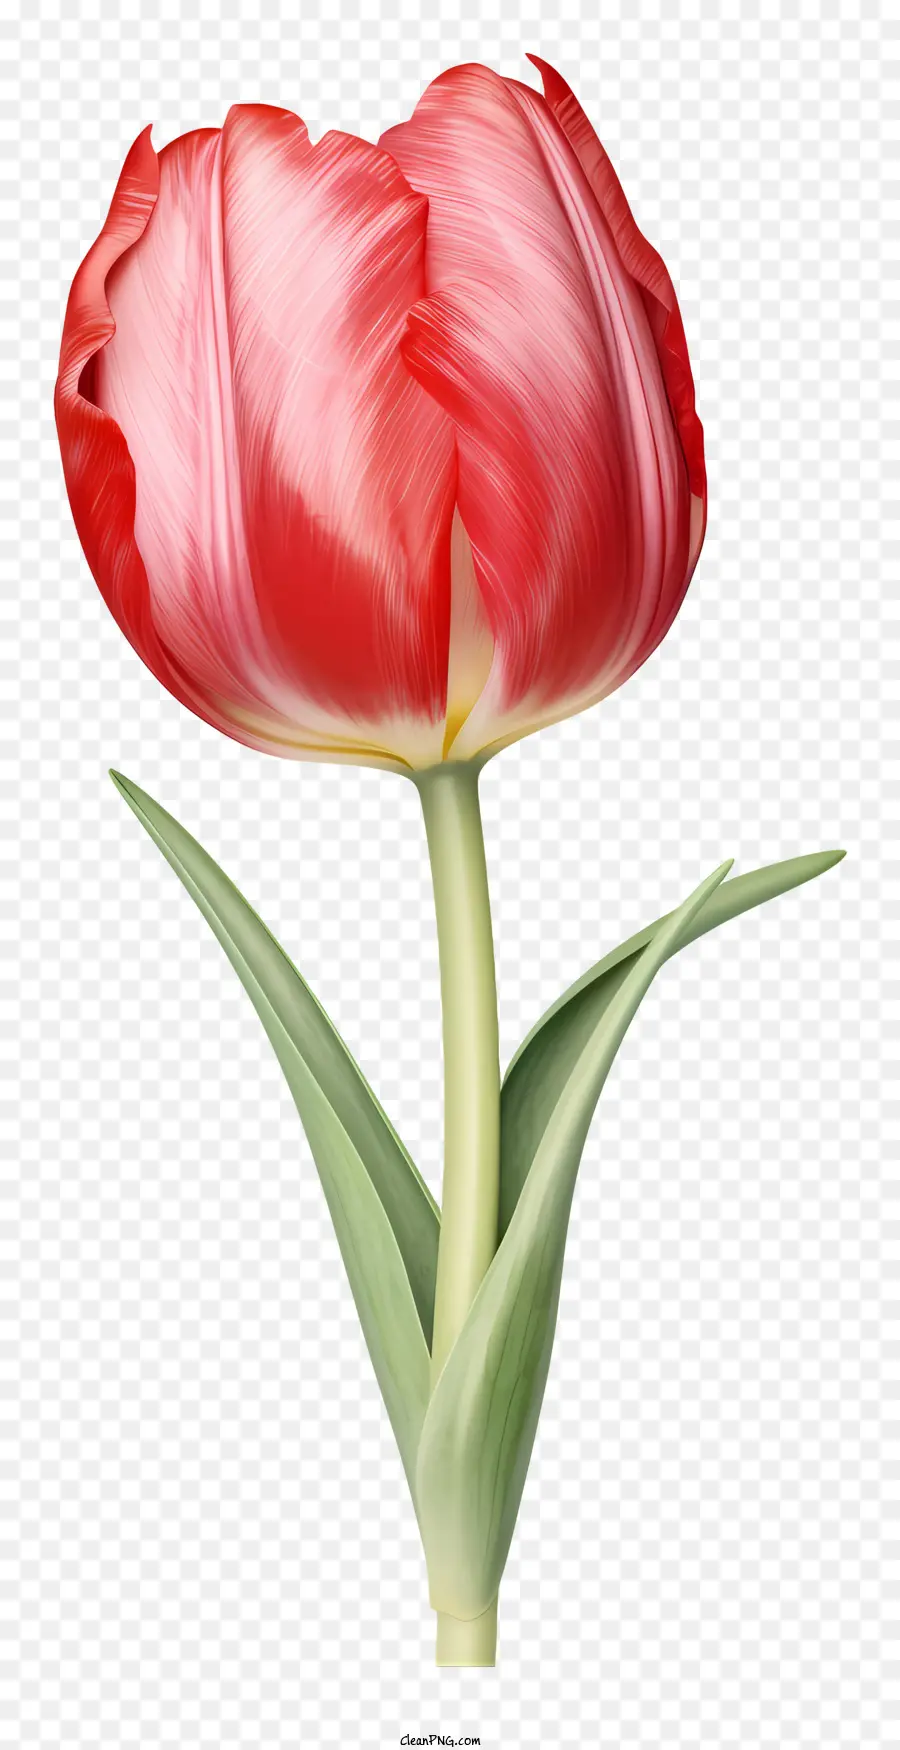 hoa đỏ - Hoa tulip màu đỏ thực tế trên nền đen với cánh hoa lan rộng